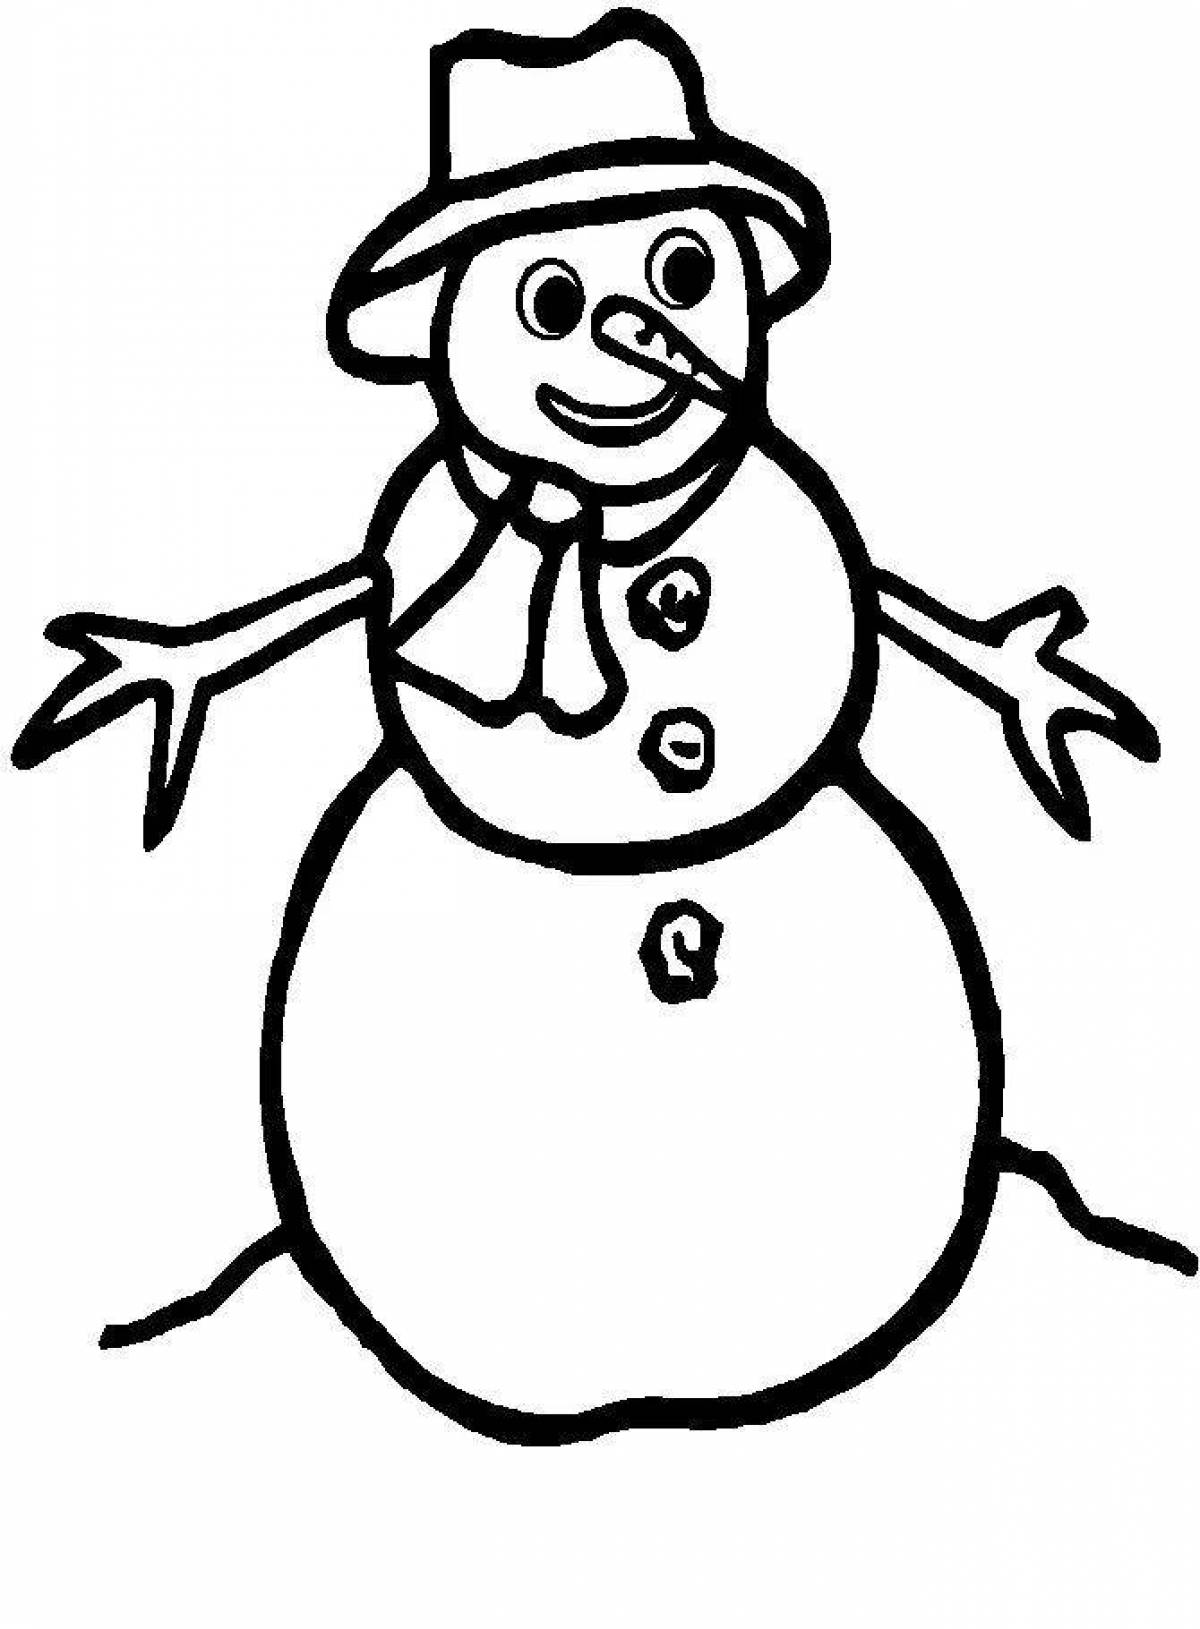 Праздничная раскраска снеговик для детей 2-3 лет